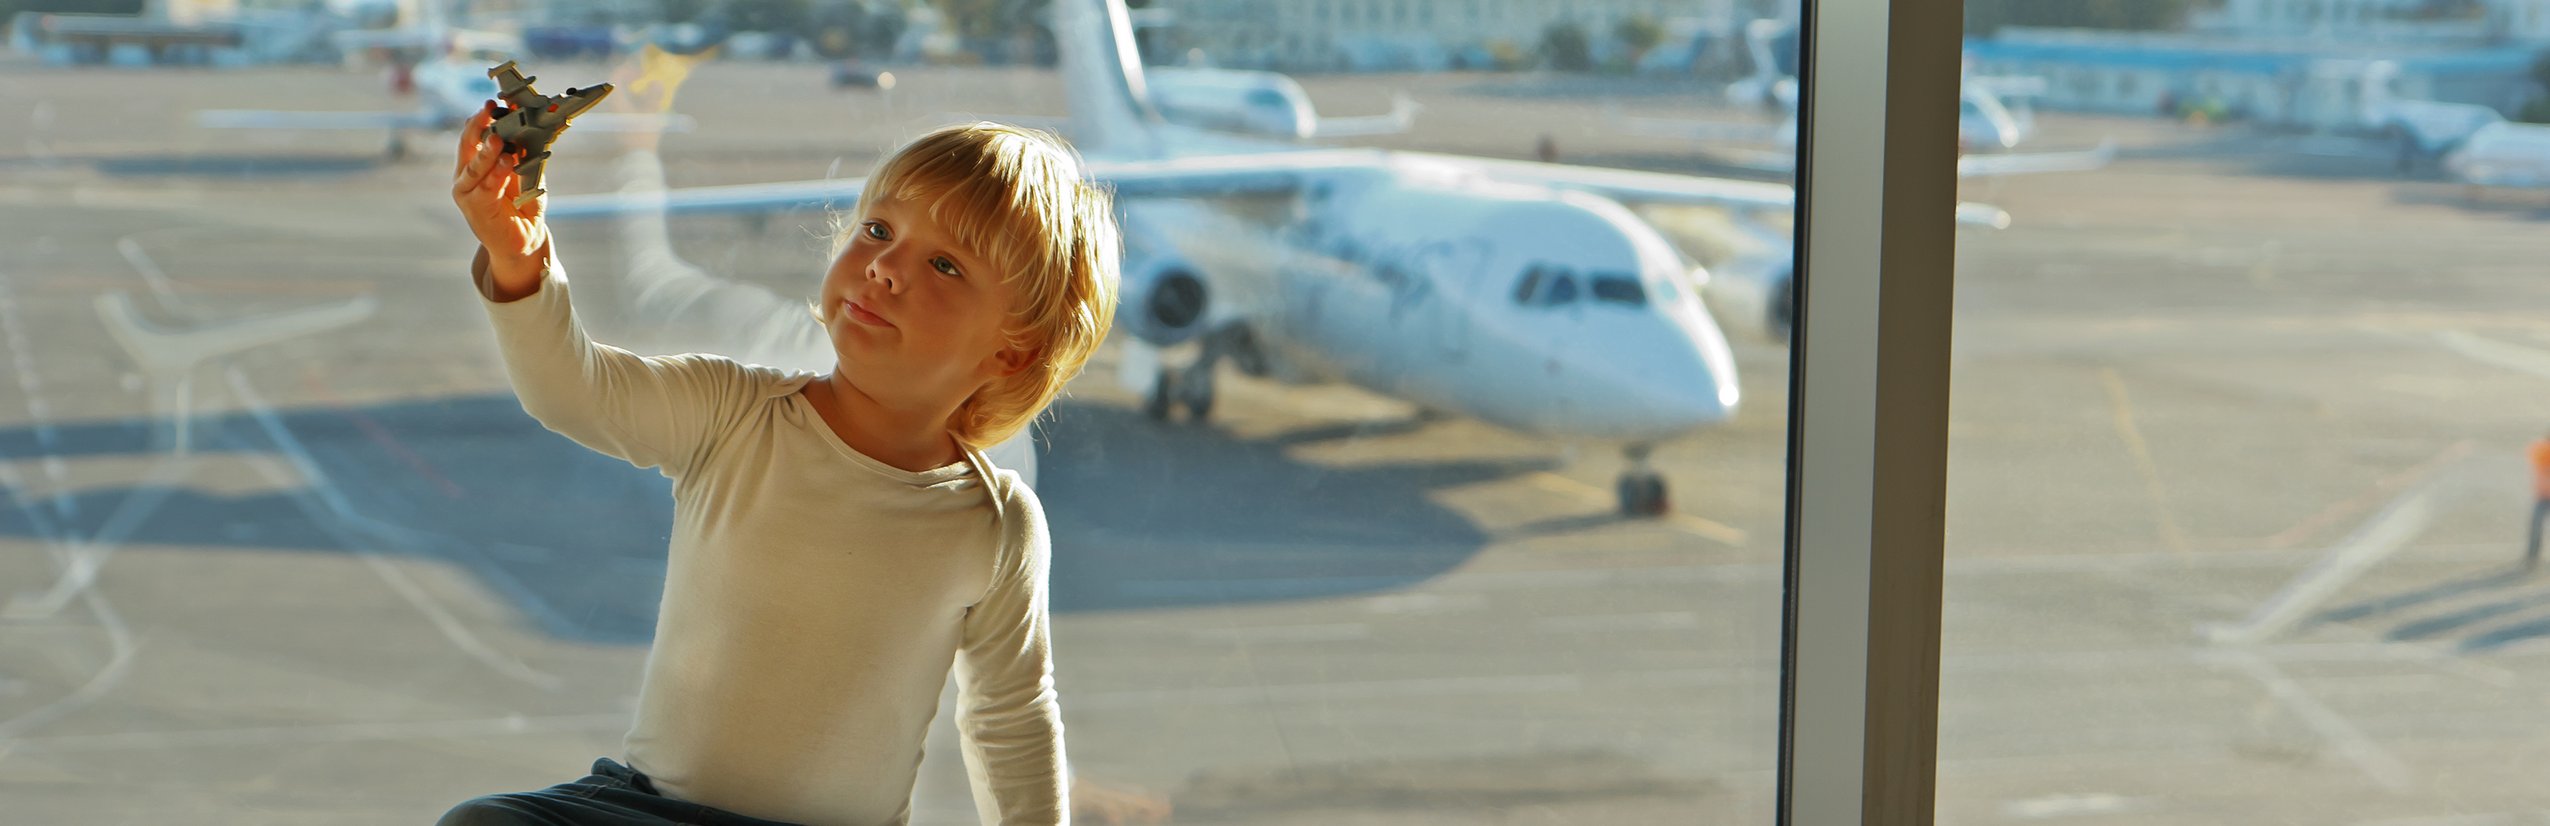 Flugreisen mit Kindern - Fliegen mit Kindern Tipps - Langstreckenflug mit Kindern - Kind spielt mit Flugzeug